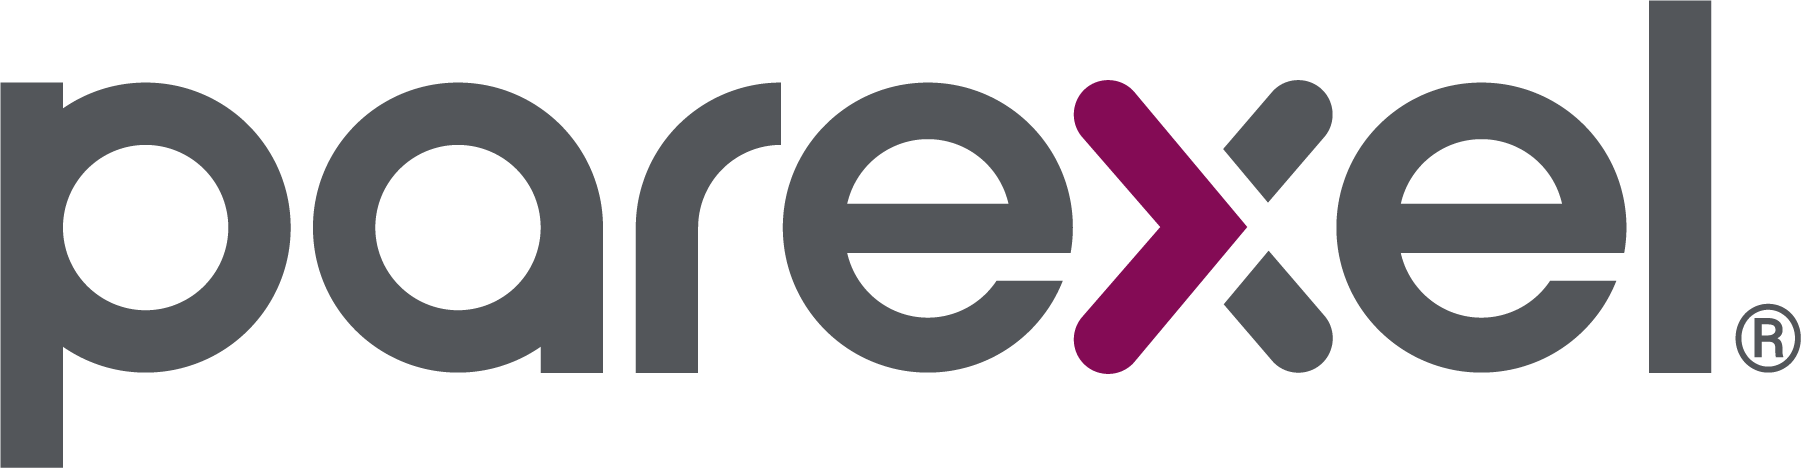 Parexel_Master_Logo_RGB